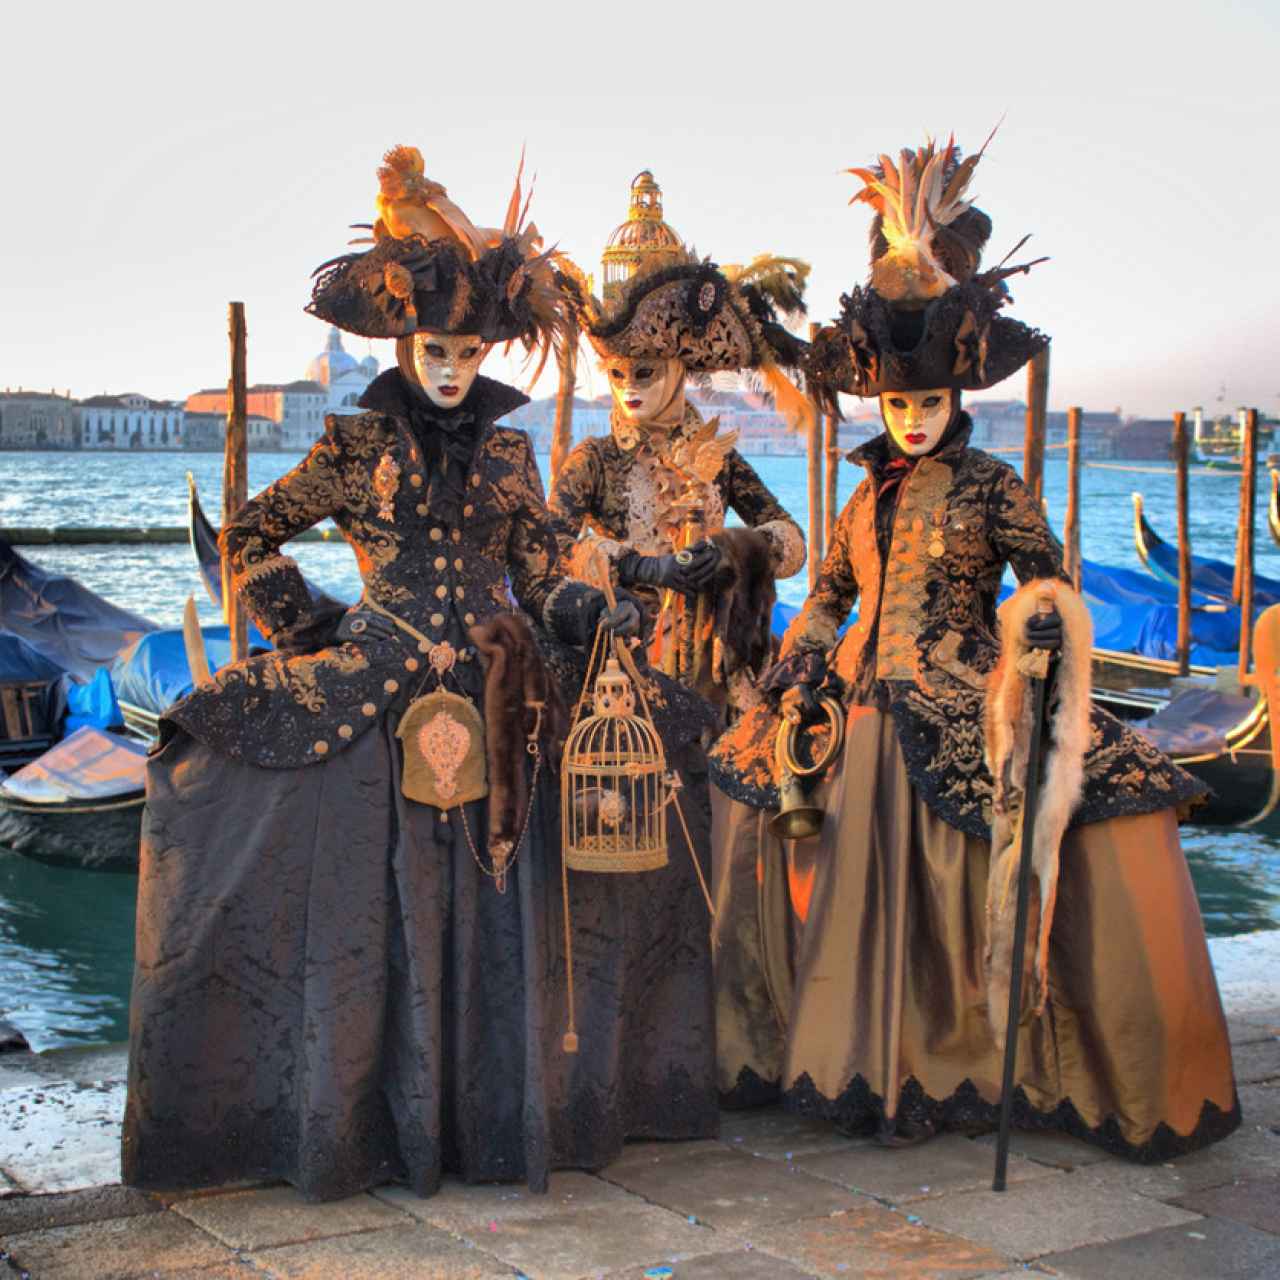 Tres personas disfrazadas en el Carnaval de Venecia.